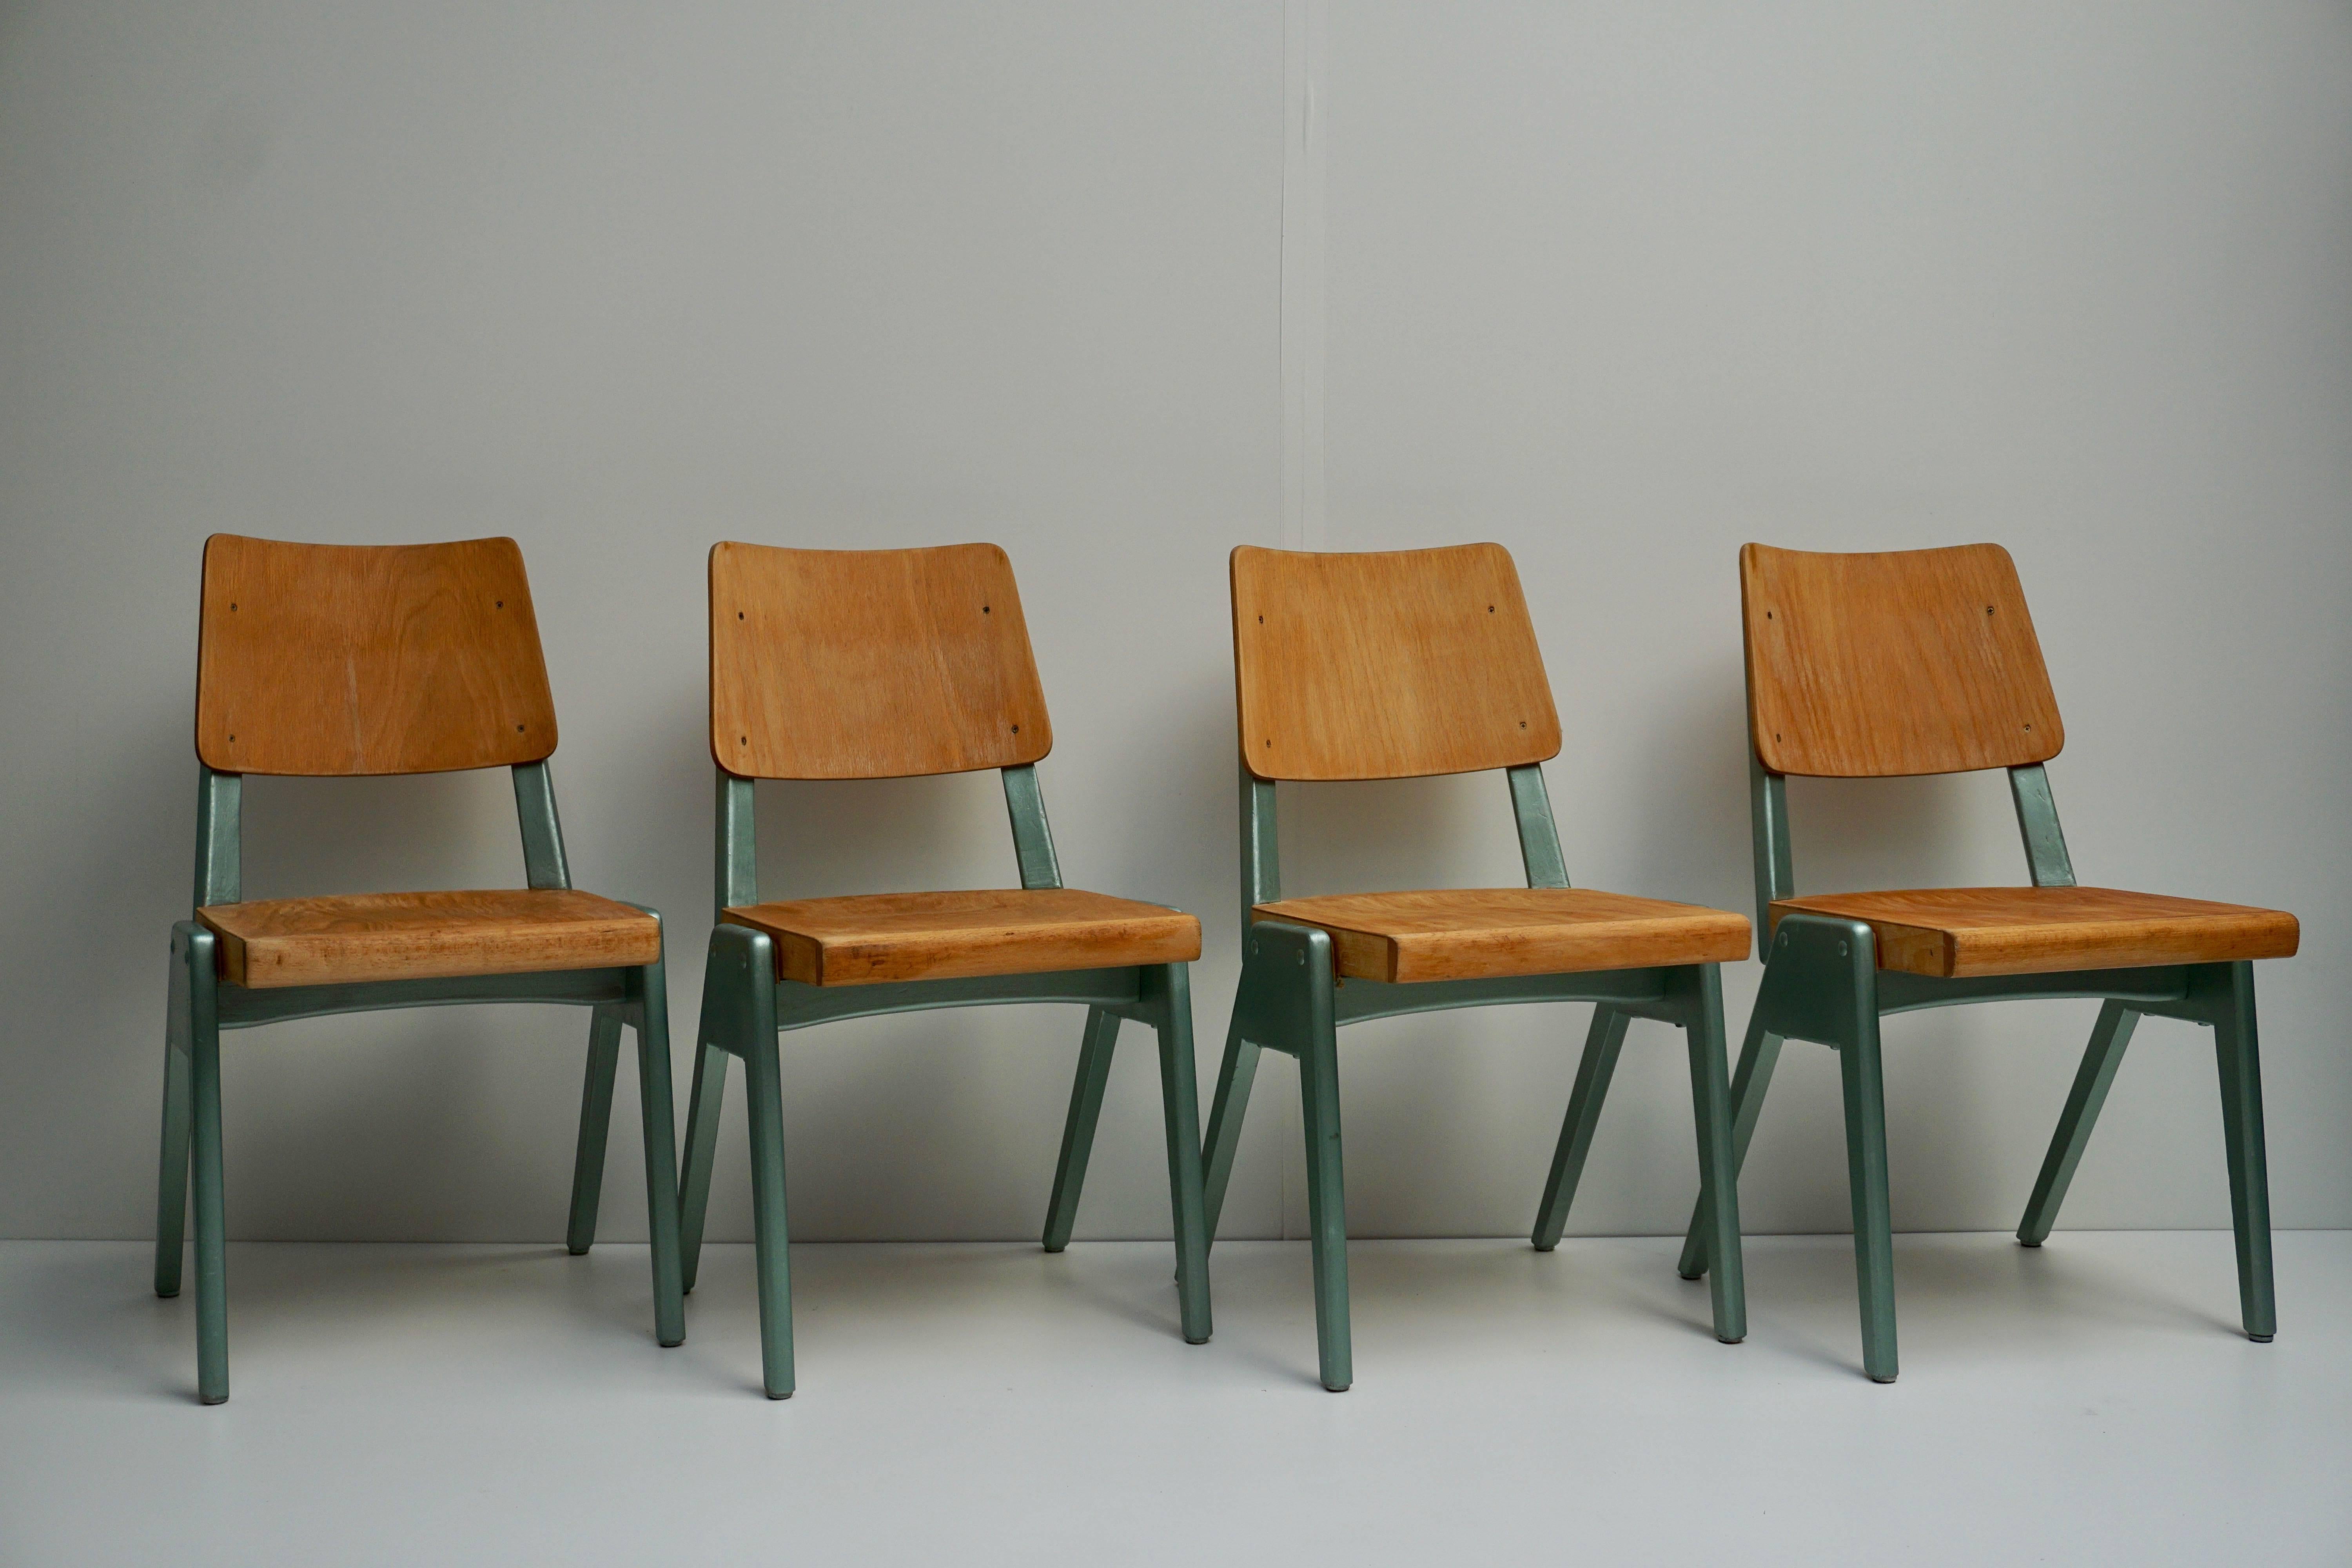 Satz von vier Esszimmerstühlen, 1950er Jahre.
Maße: Höhe Sitz 42 cm.